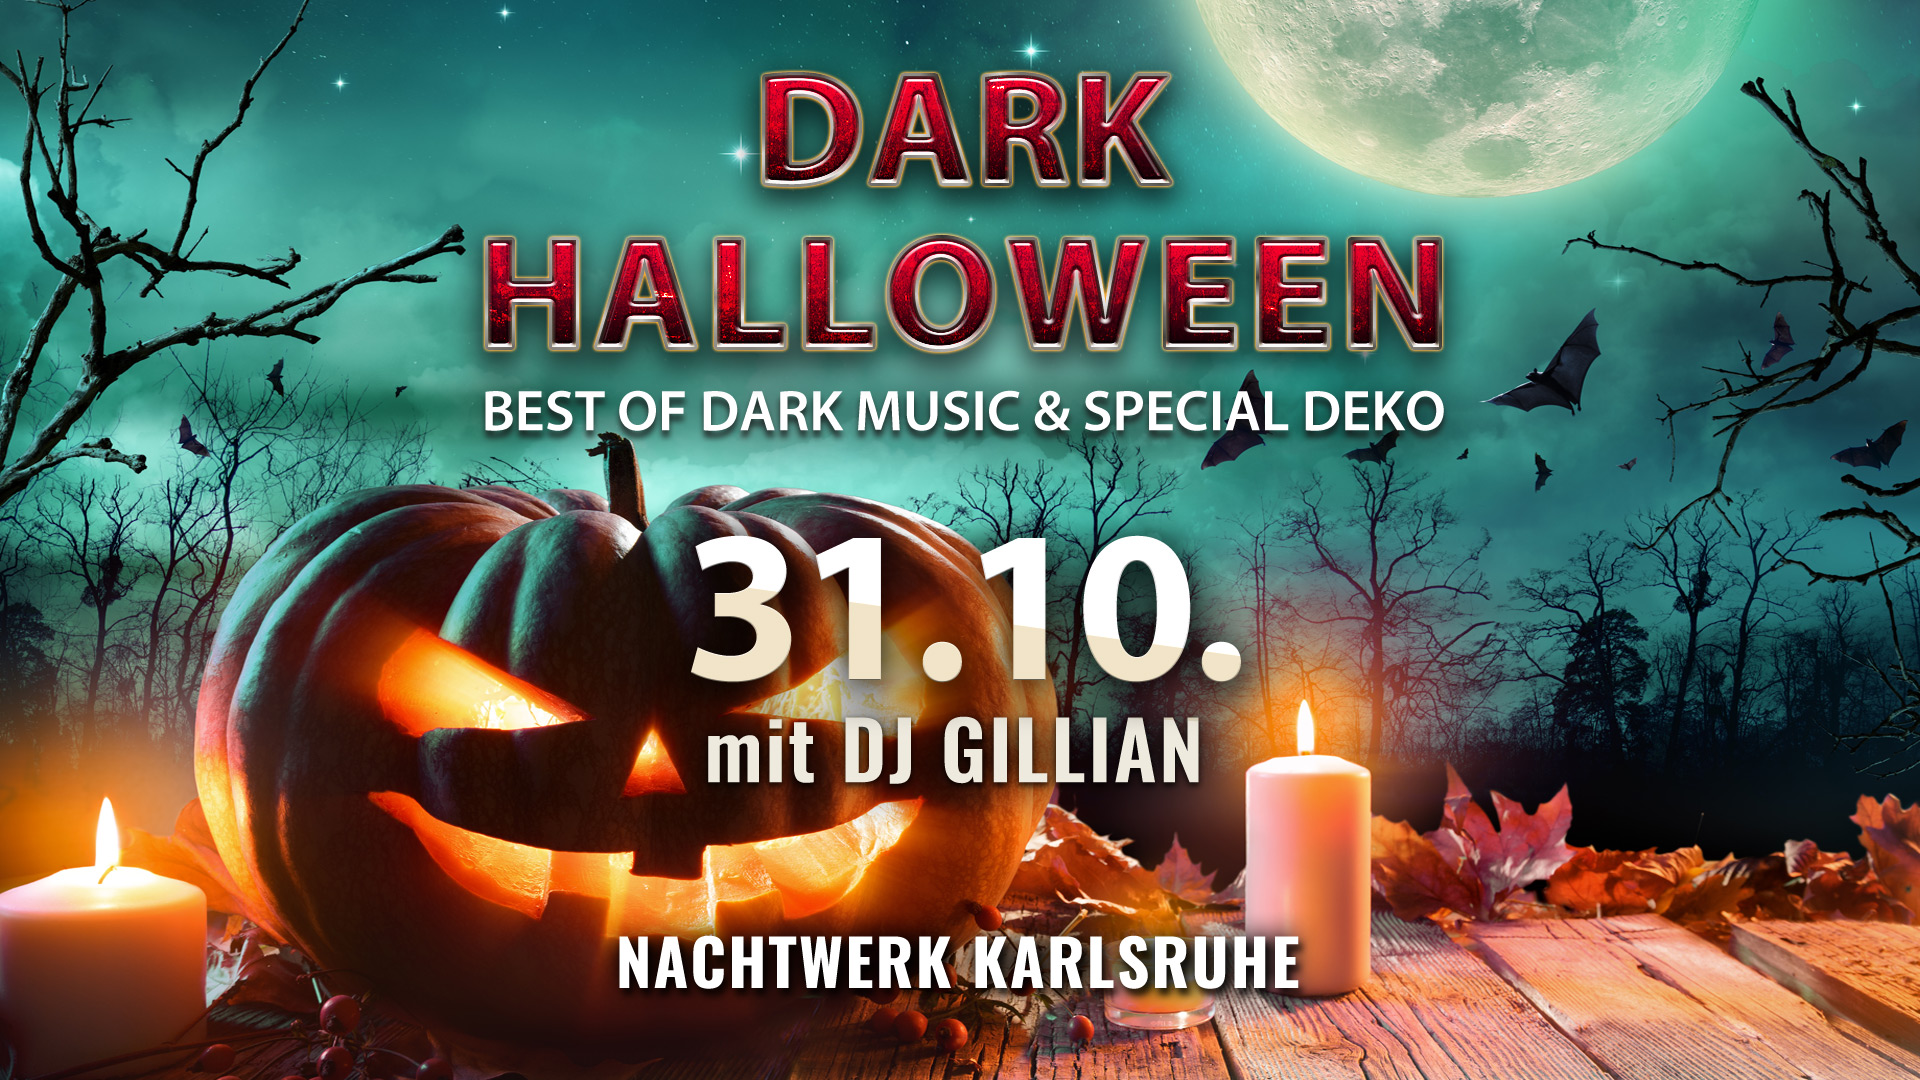 DARK HALLOWEEN Party im Nachtwerk Karlsruhe mit DJ GILLIAN